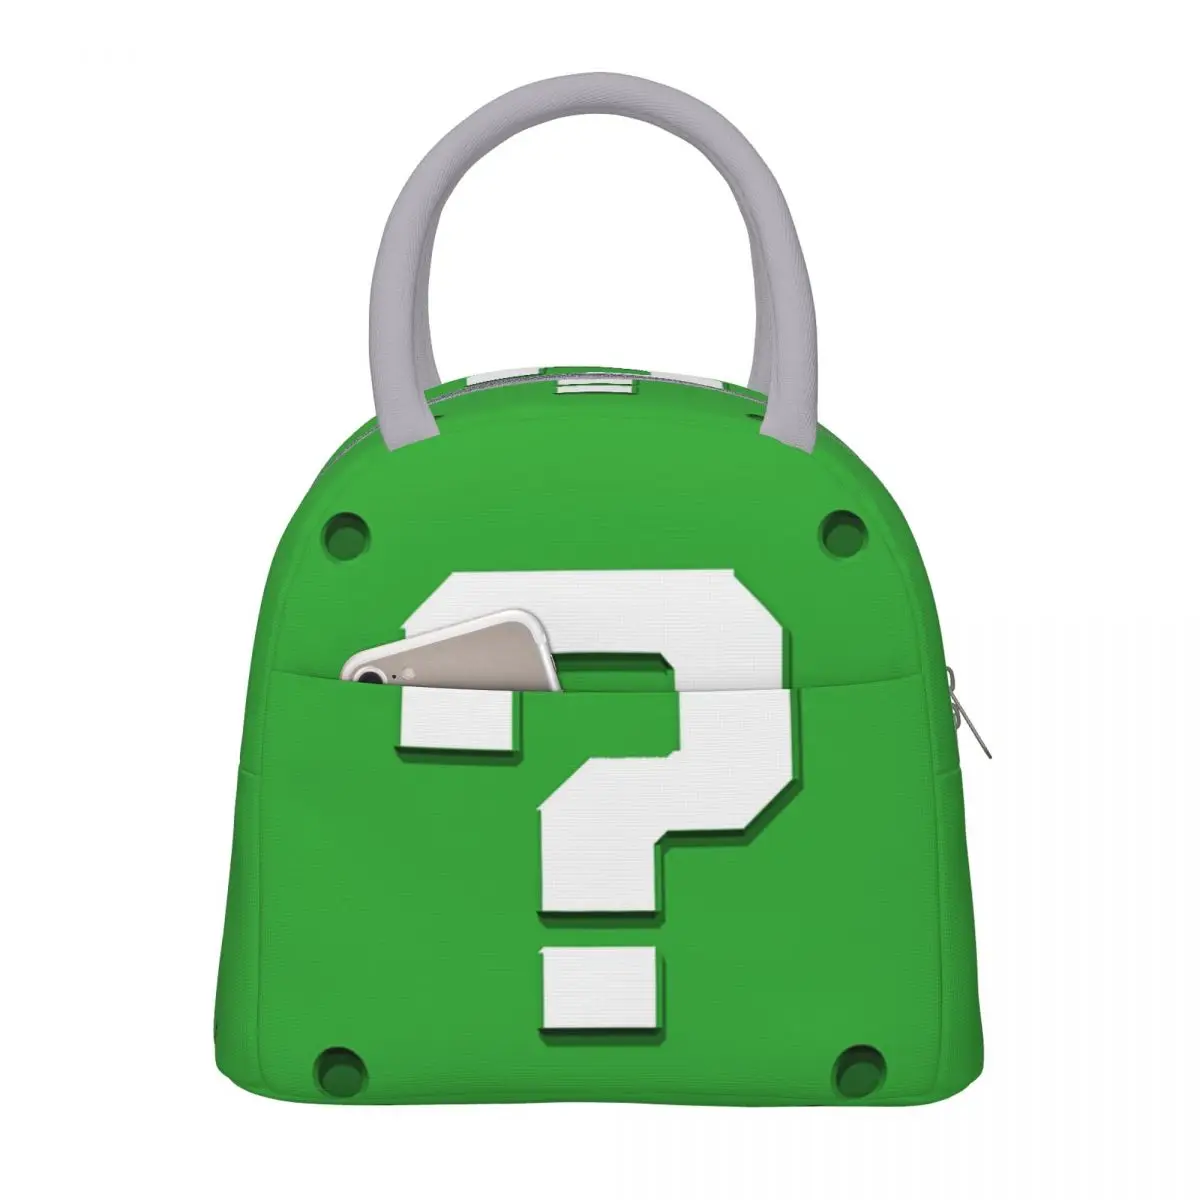  Зеленый блок вопросов Изолированные сумки для ланча Контейнер для еды Портативный холодильник Термо Ланч Бокс Для работы